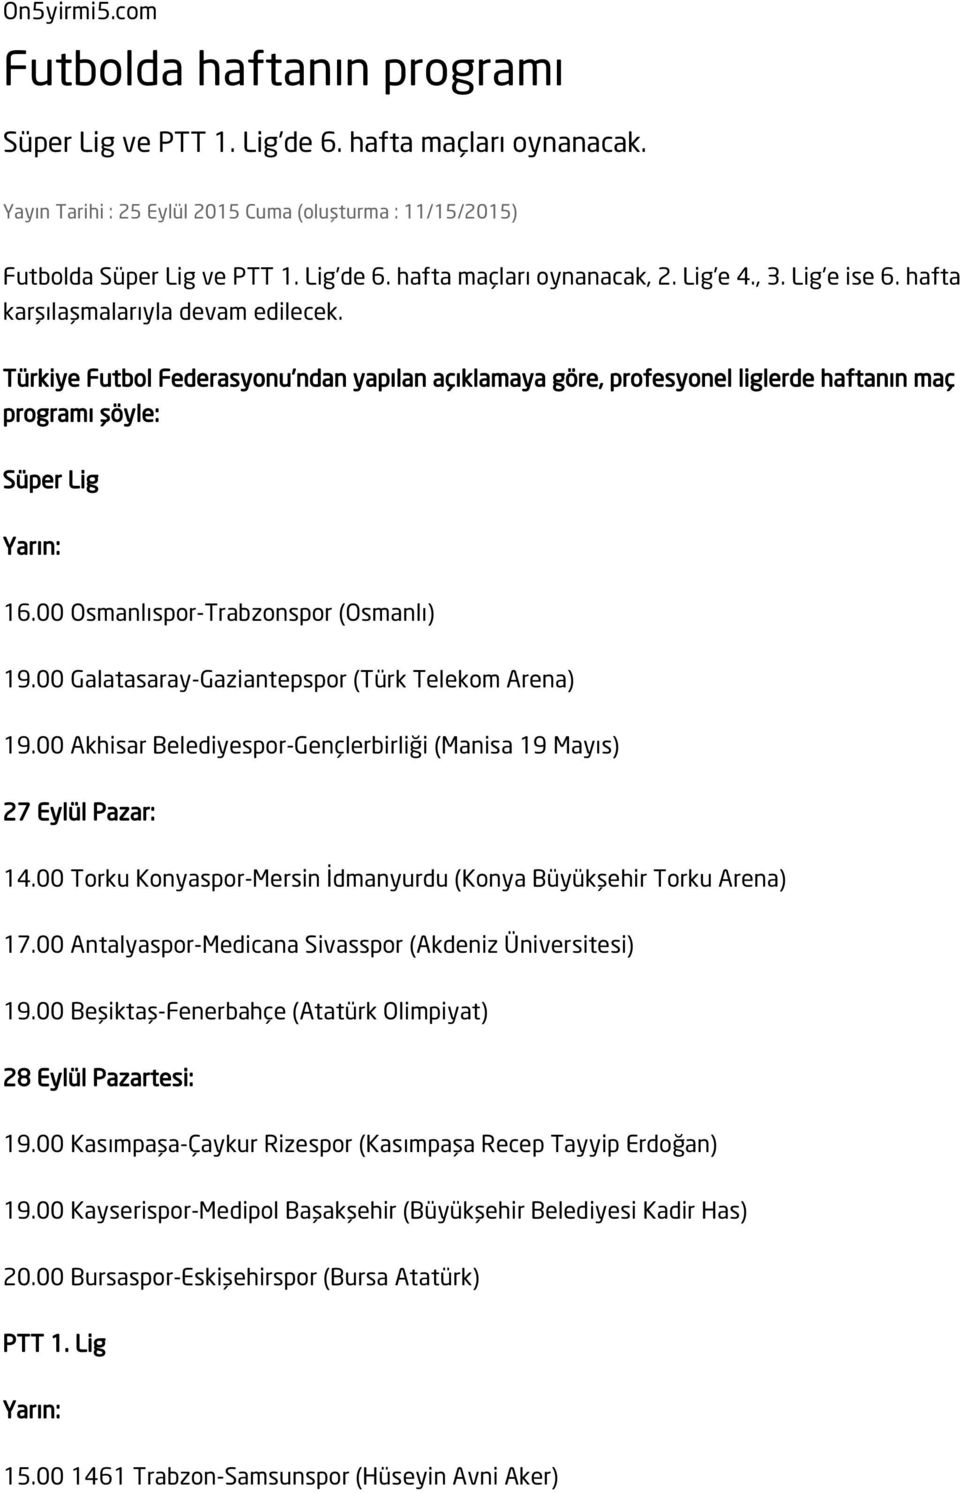 00 Osmanlıspor-Trabzonspor (Osmanlı) 19.00 Galatasaray-Gaziantepspor (Türk Telekom Arena) 19.00 Akhisar Belediyespor-Gençlerbirliği (Manisa 19 Mayıs) 14.